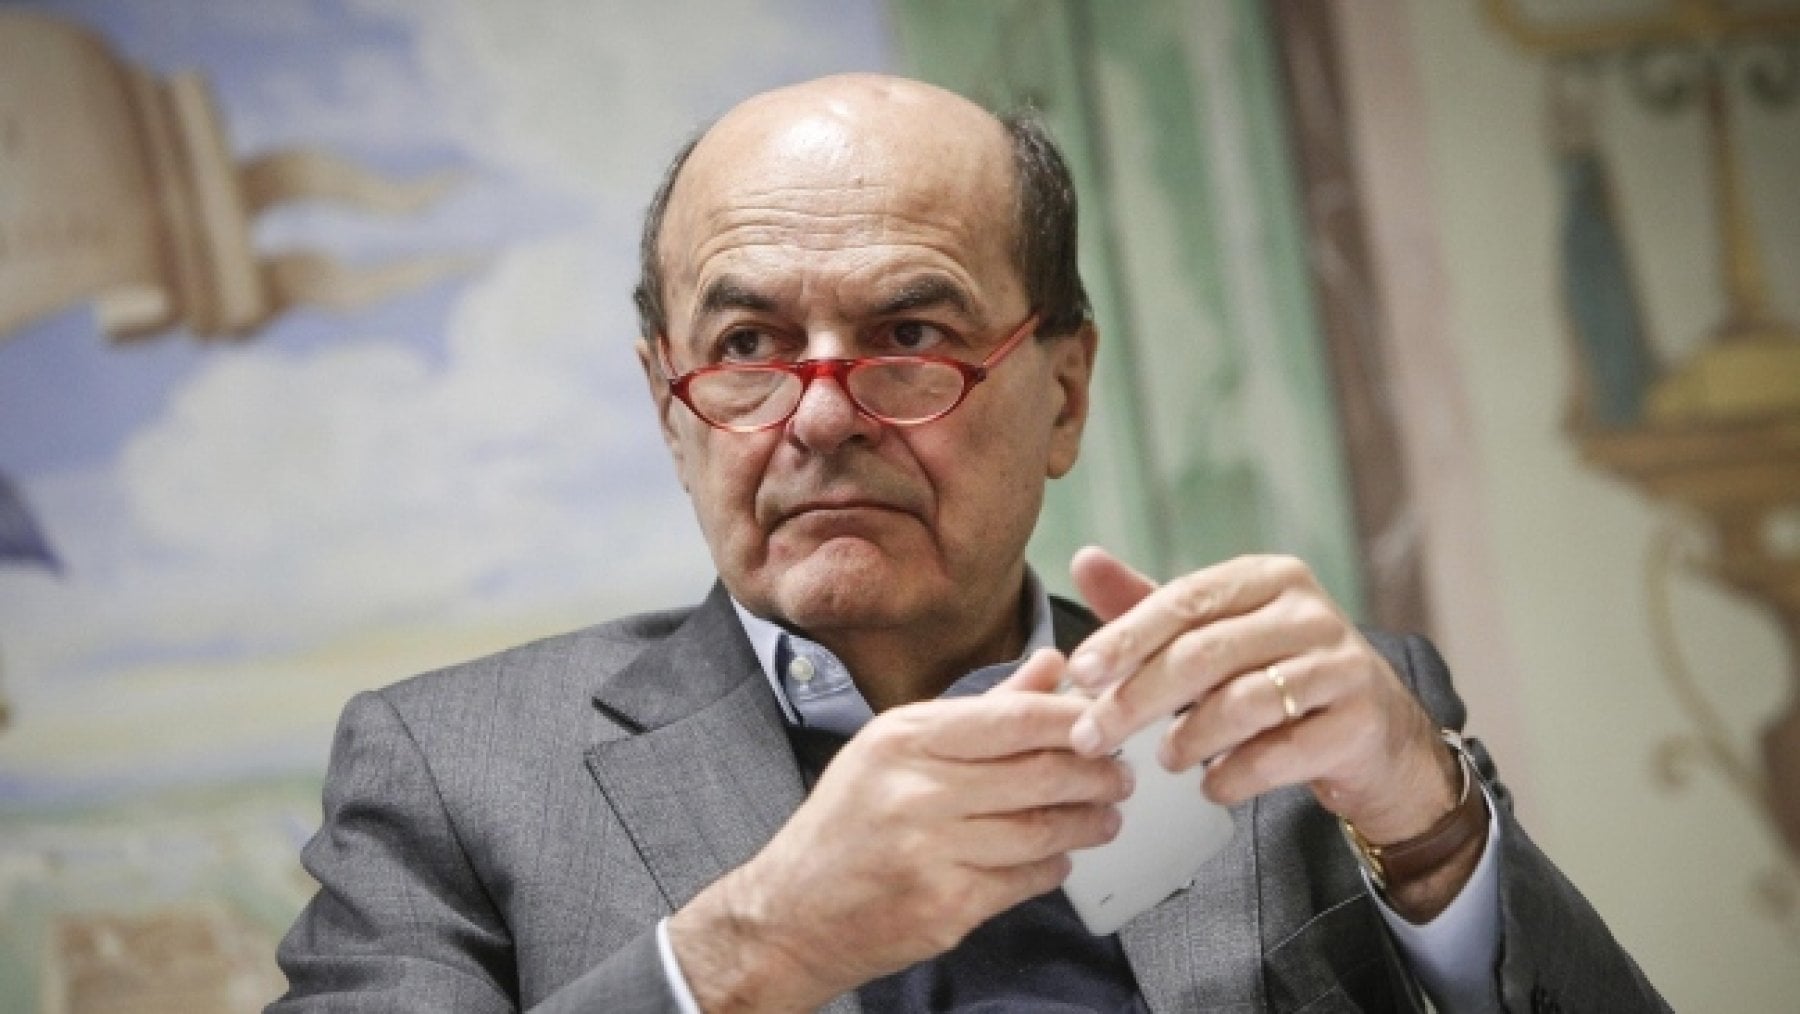 Bersani: "Meloni arrogante per cultura, se la sinistra fa un passo avanti per la destra sarà un problema serio"